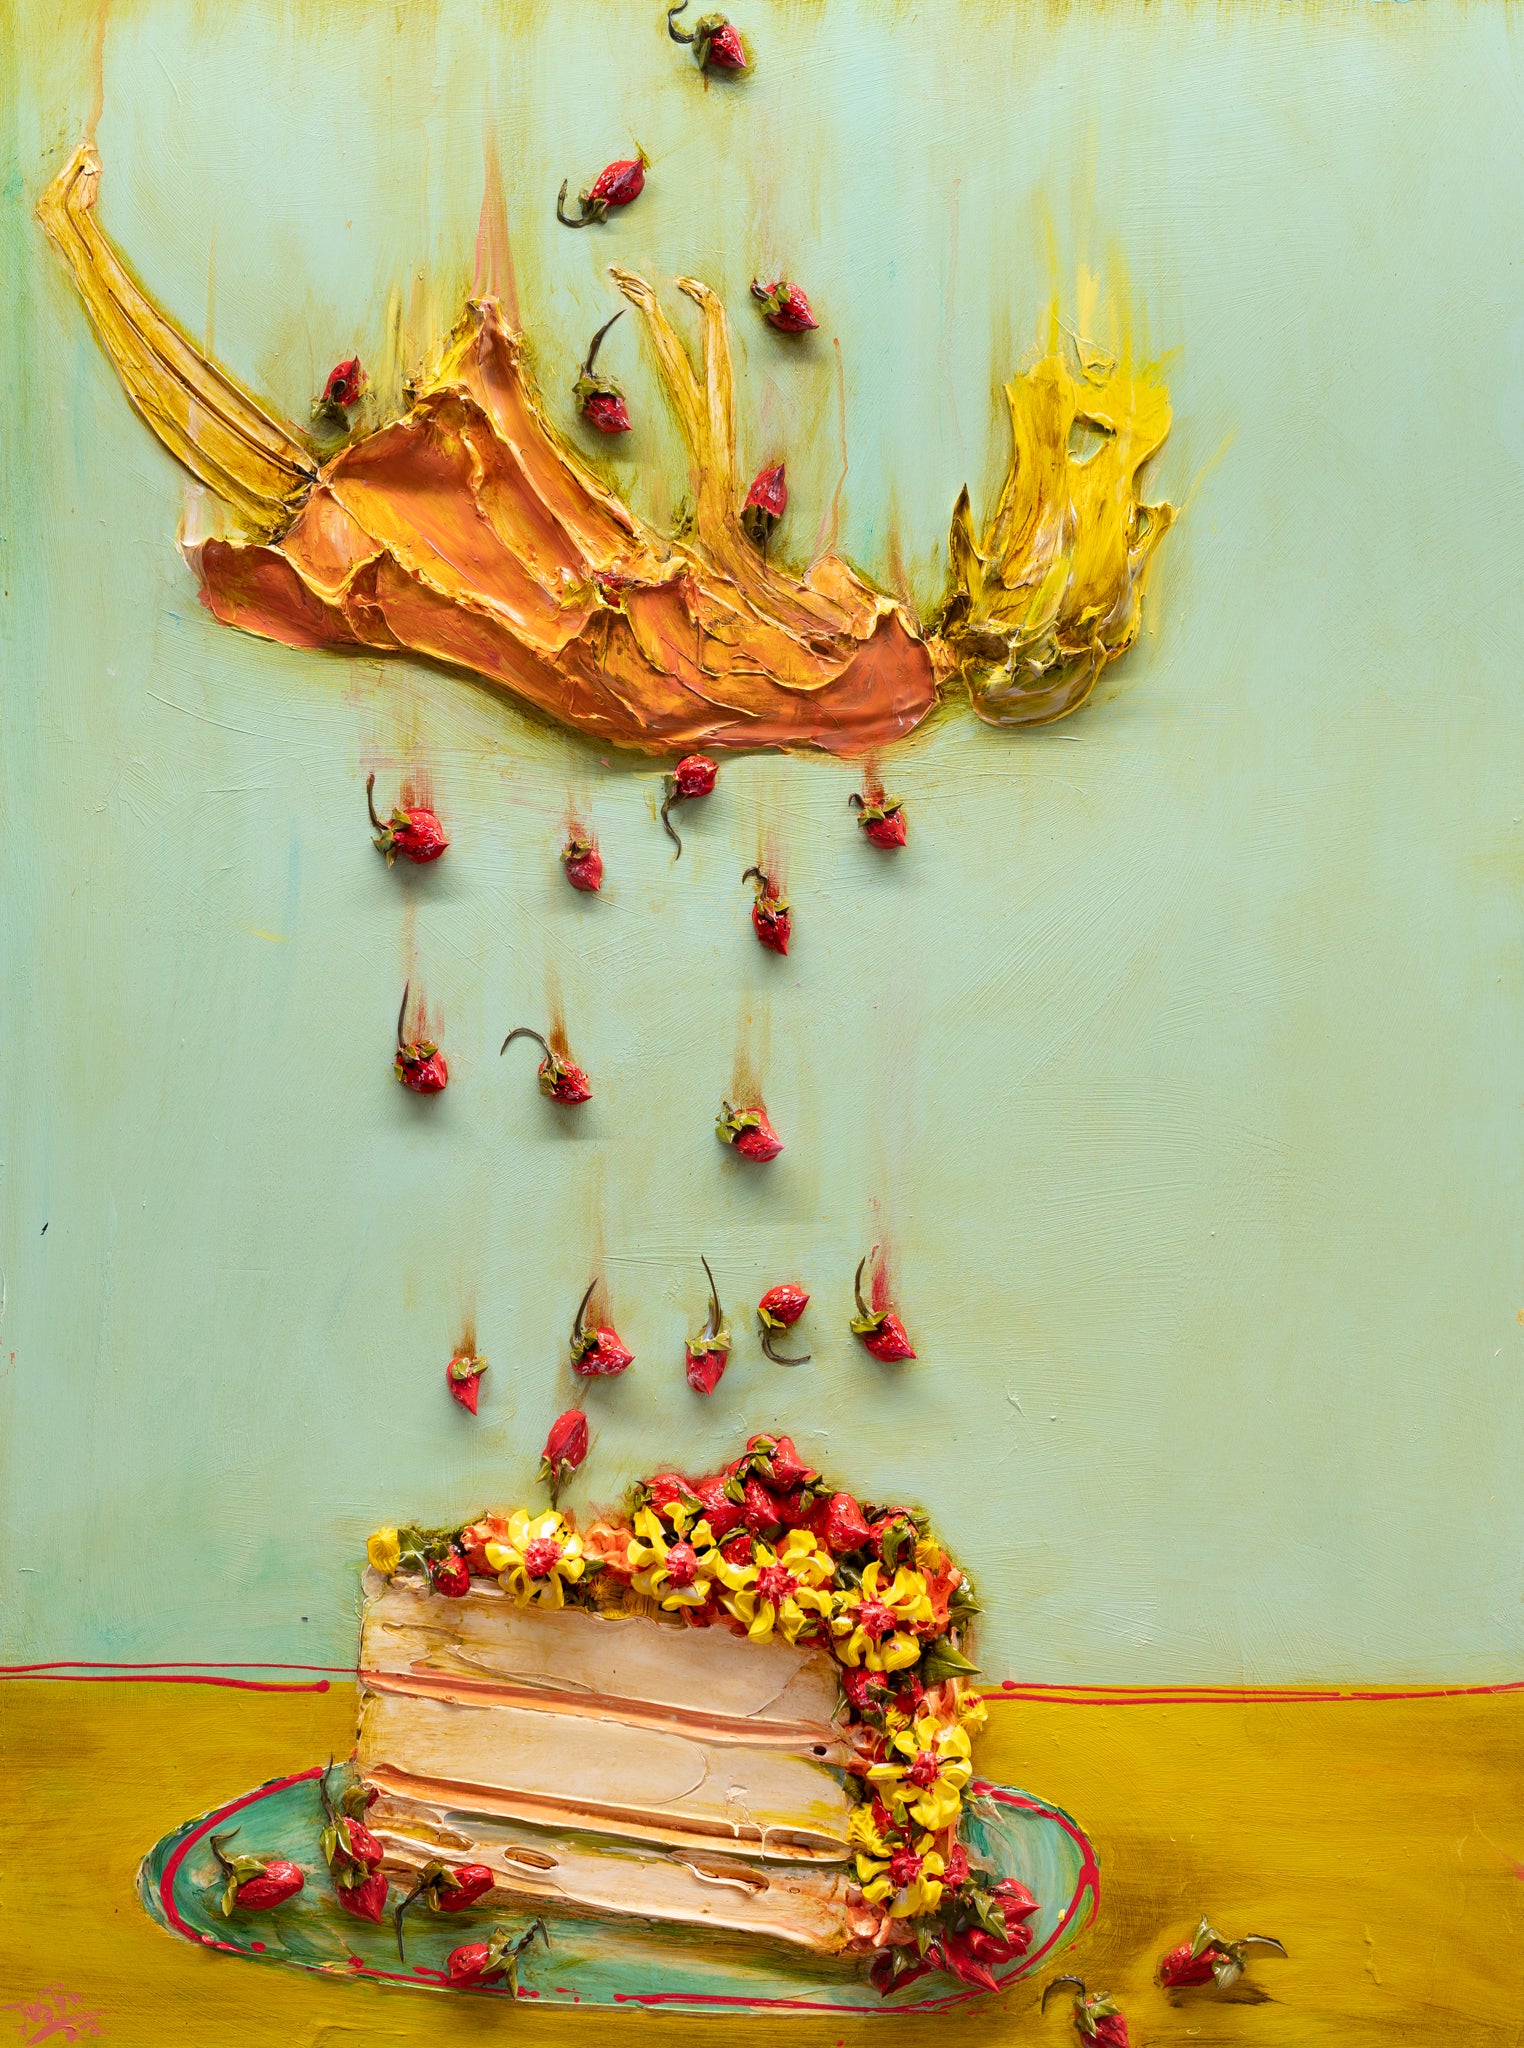 Girl Falling Into Cake, 36x48